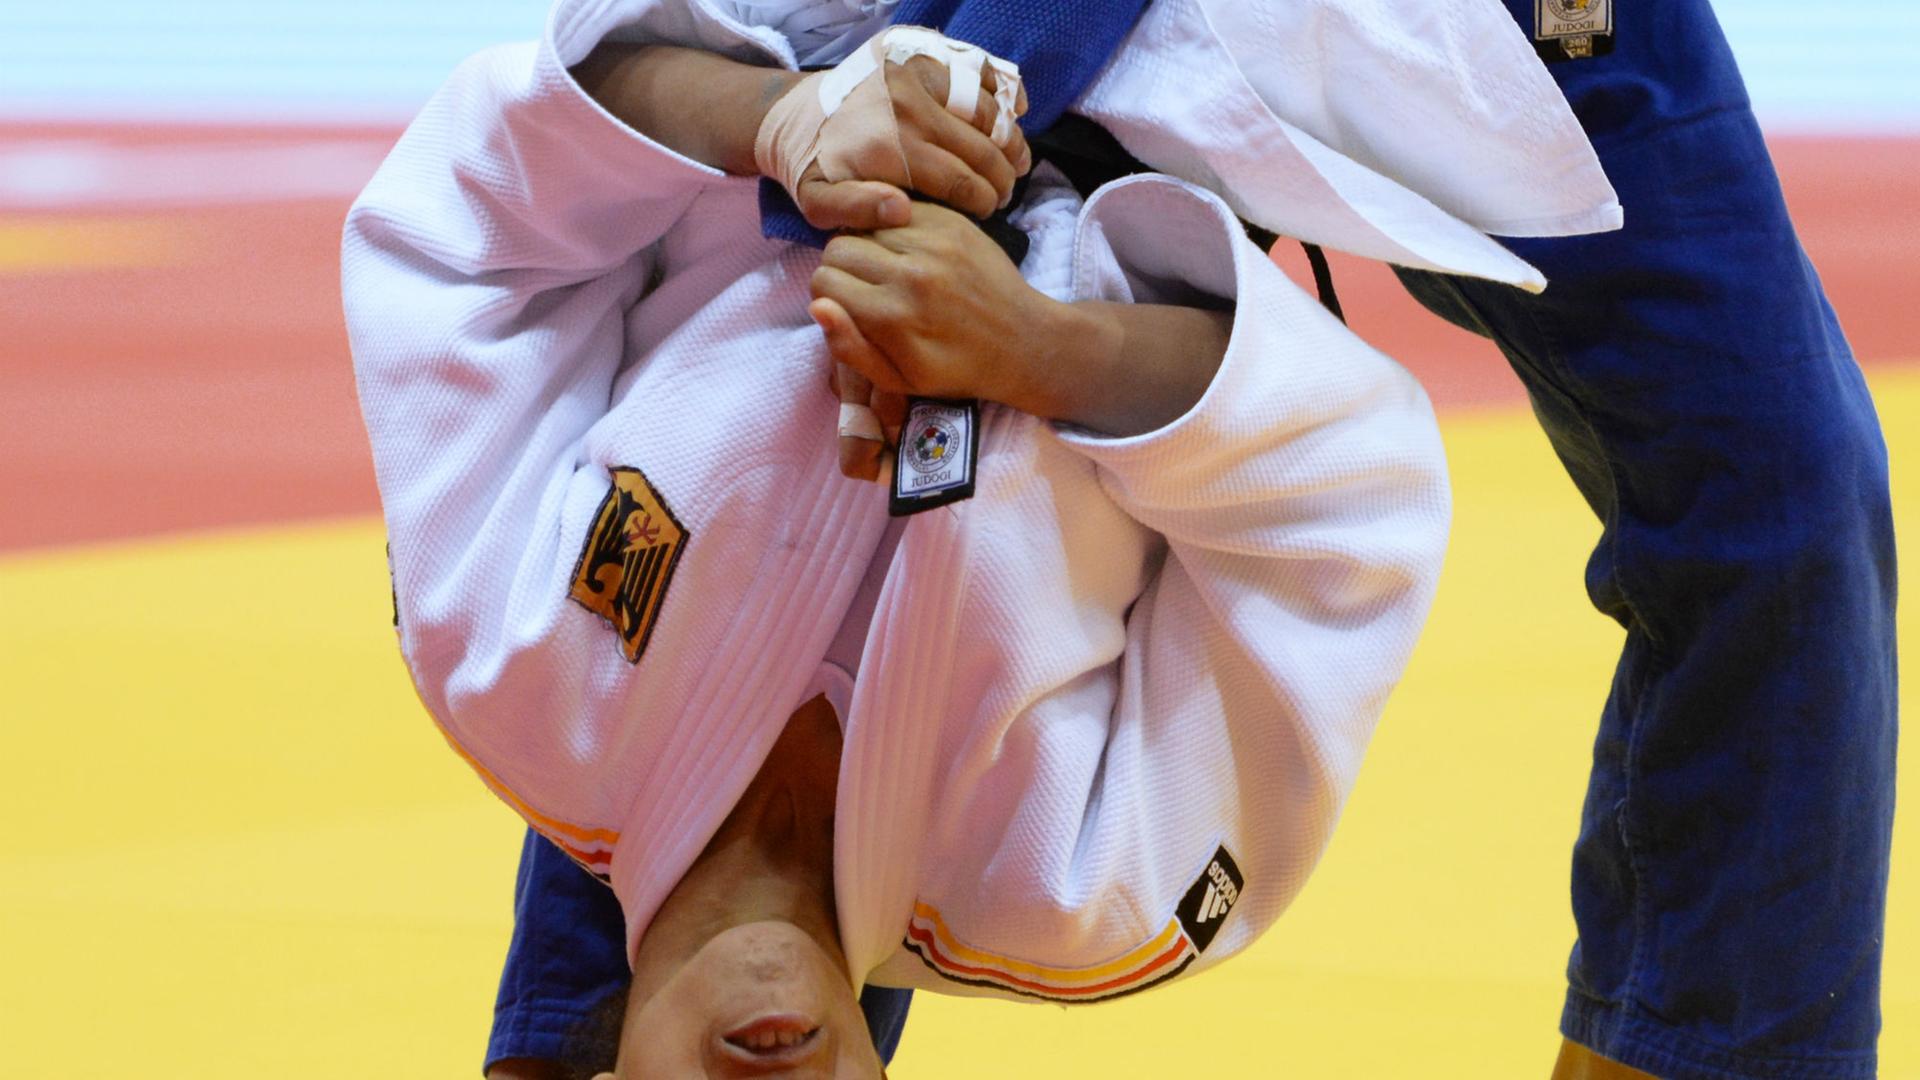 Die deutsche Judoka Miryam Roper während eines Qualifikations-Kampfes in der Unter-57 Kilogramm-Kategorie der Frauen bei den Judo-Weltmeisterschaften in Chelyabinsk, Russland (27.08.2014).